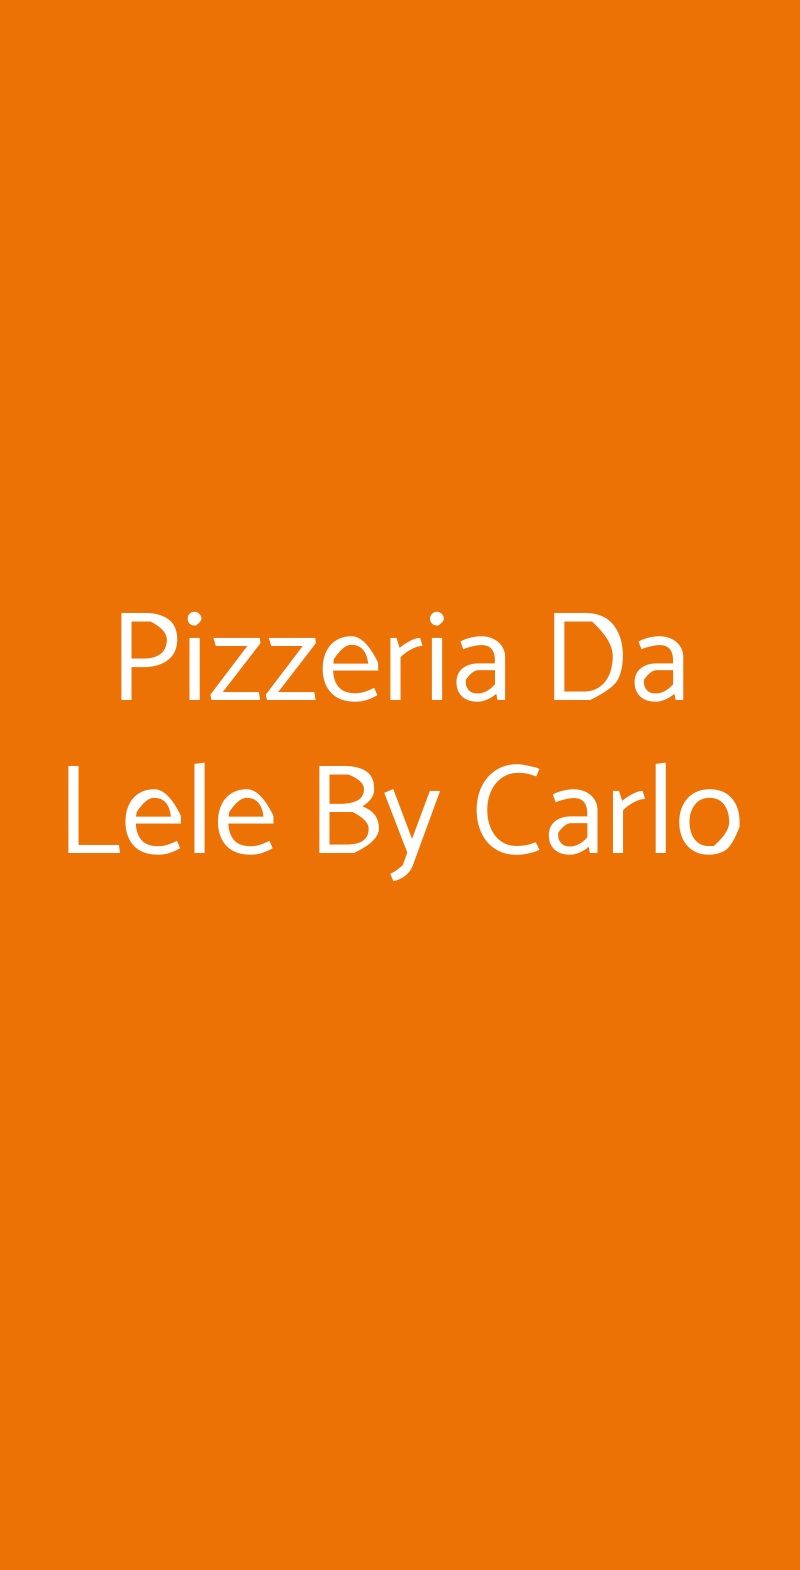 Pizzeria Da Lele By Carlo Zola Predosa menù 1 pagina